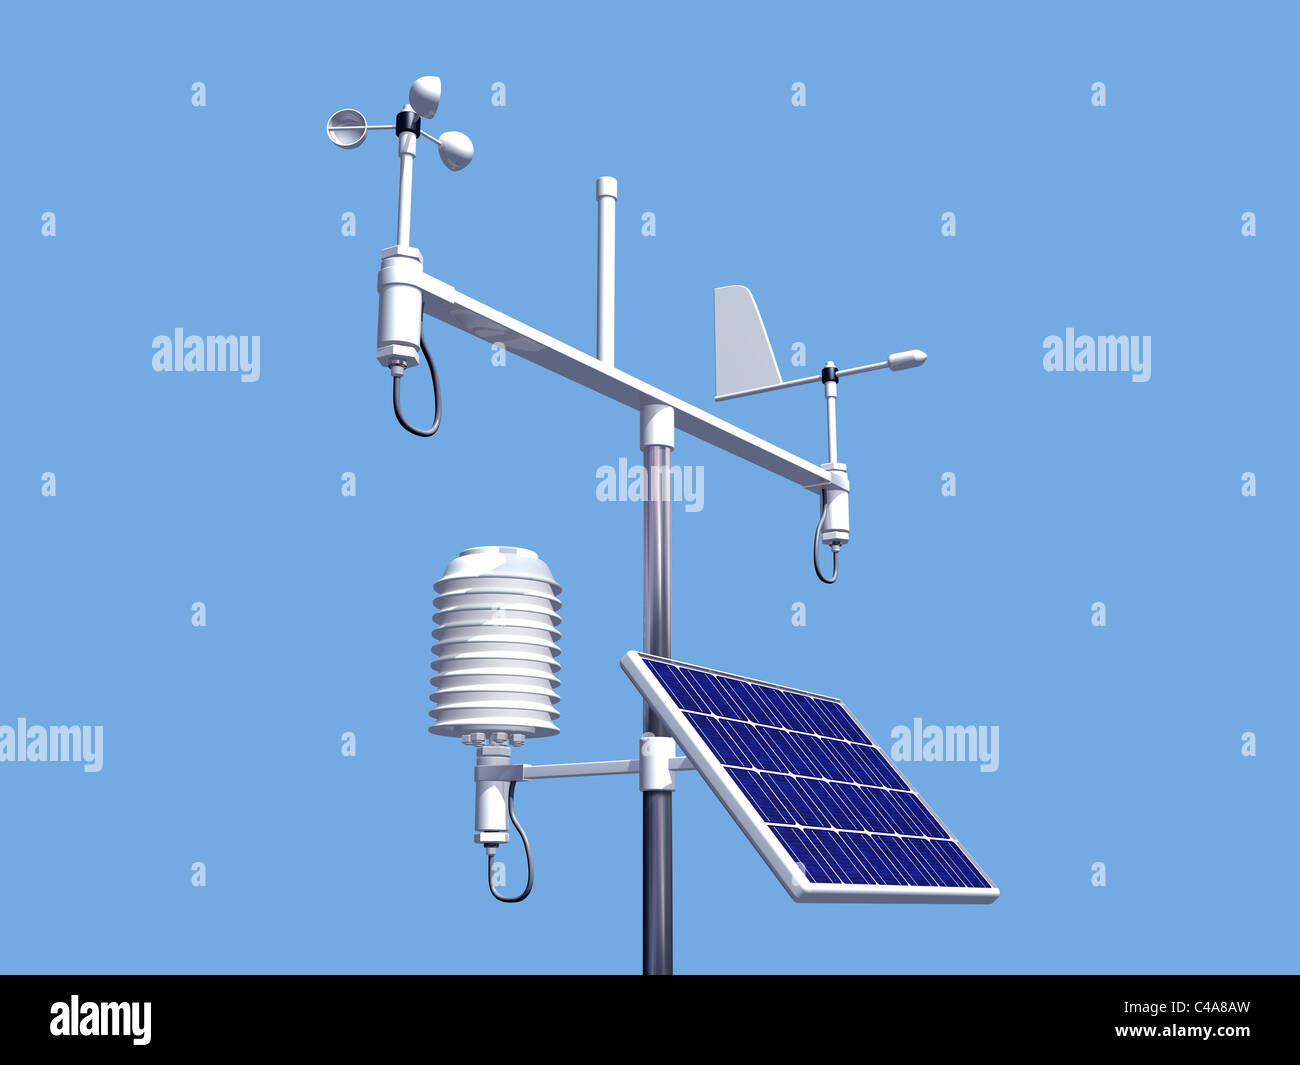 Illustration de divers instruments sur une station météo Banque D'Images